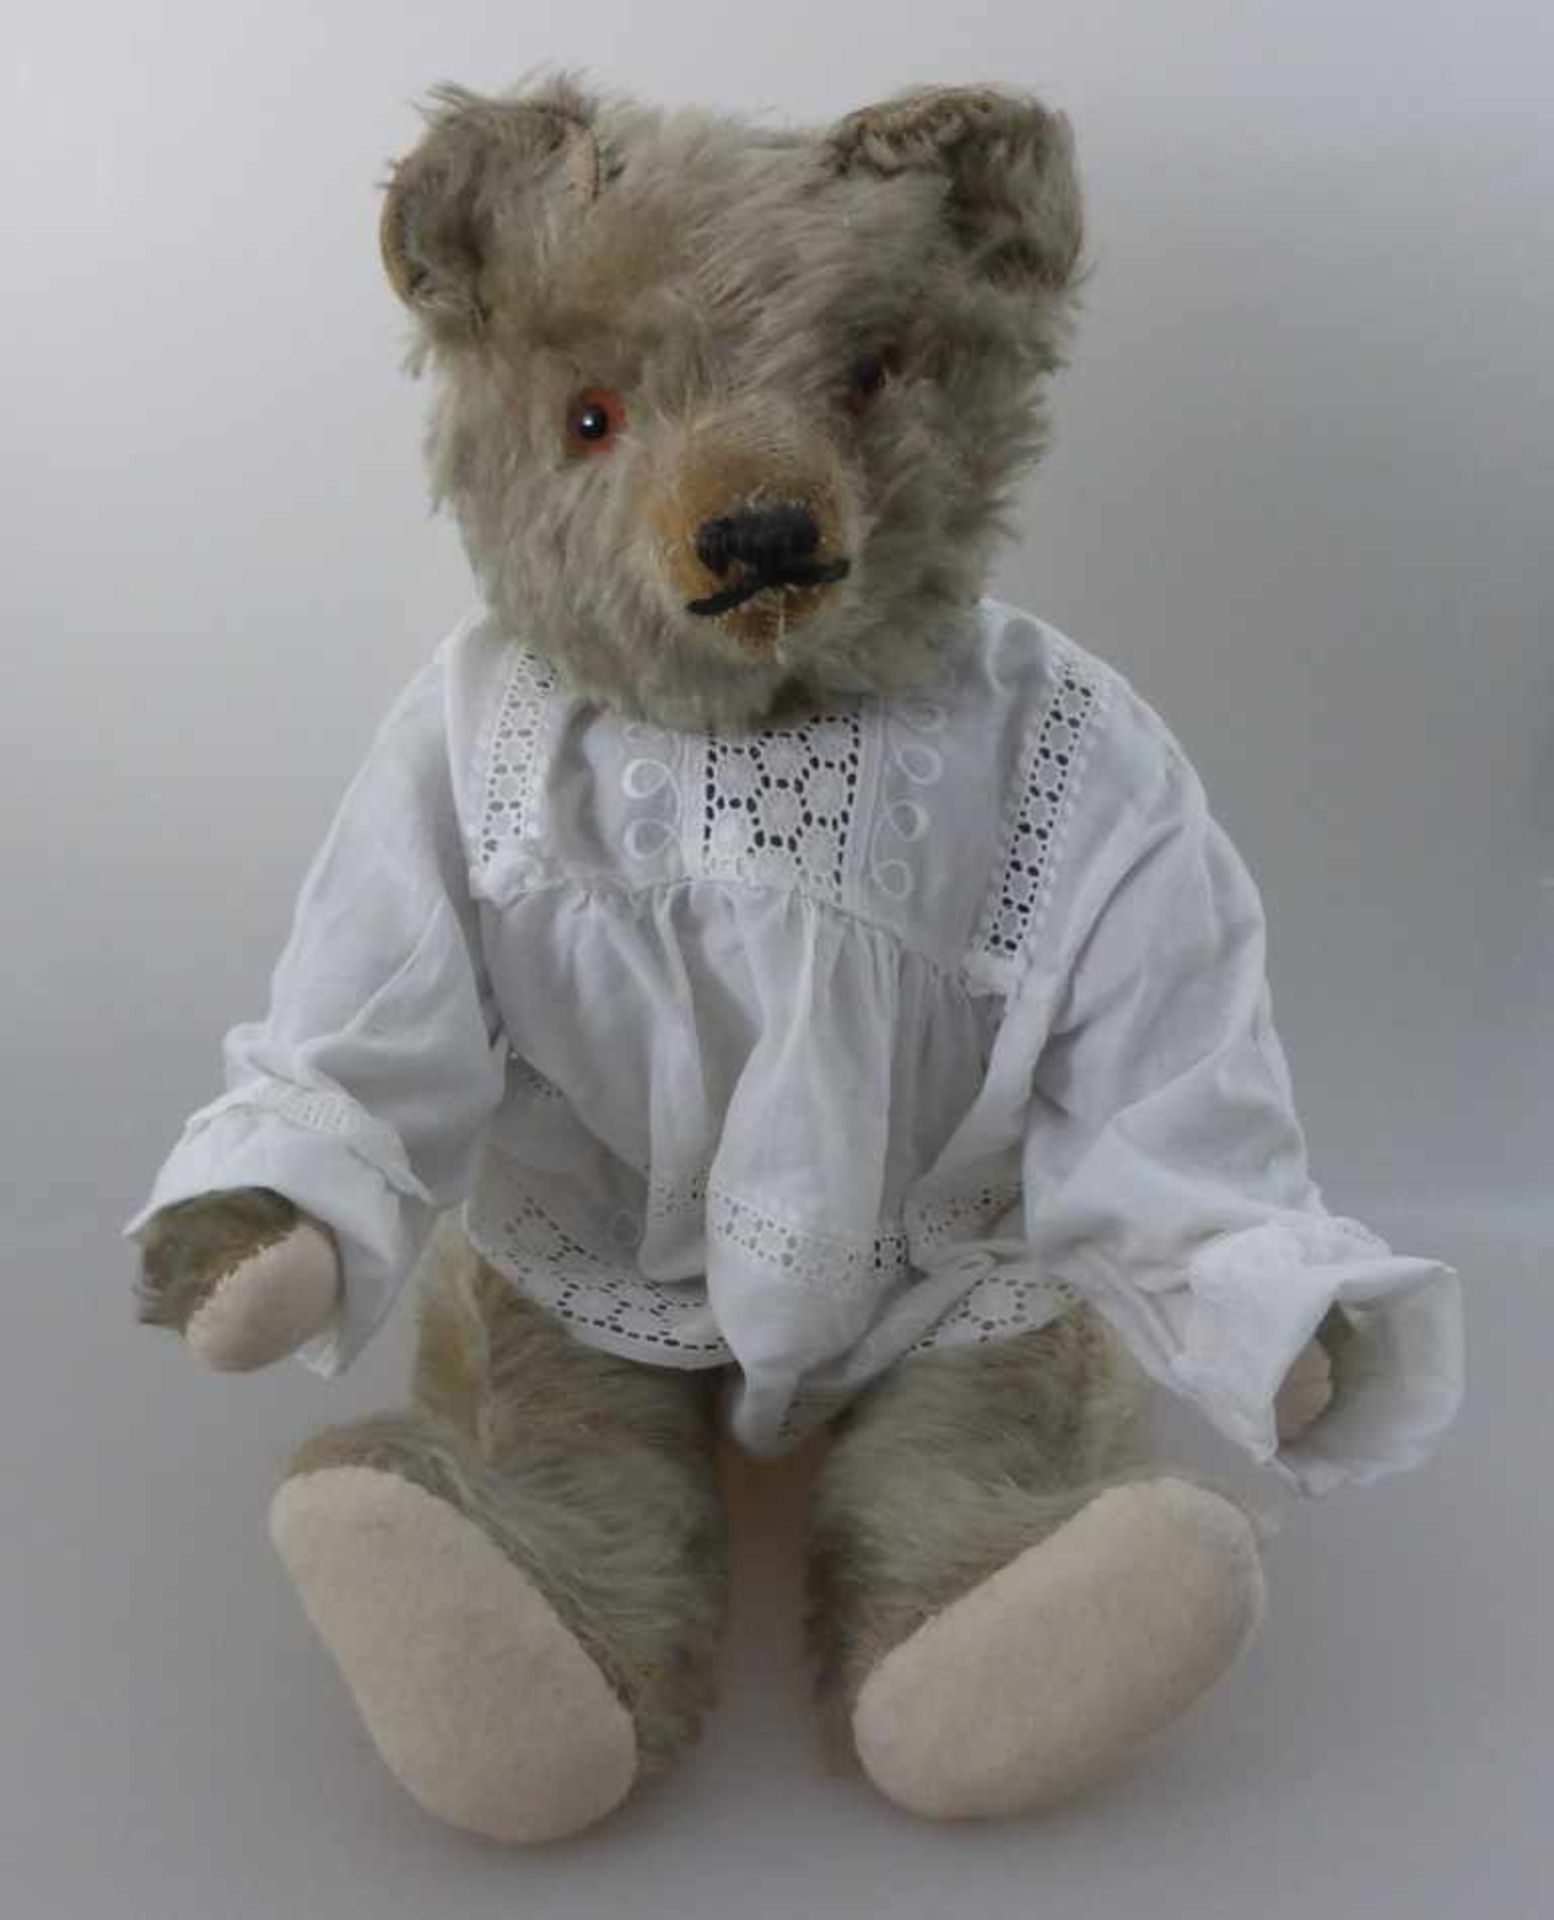 Teddy um 1930, wohl Steiff, Mohair, ausgeprägter Buckel, Tatzen neu genäht, Spielspuren, stehend